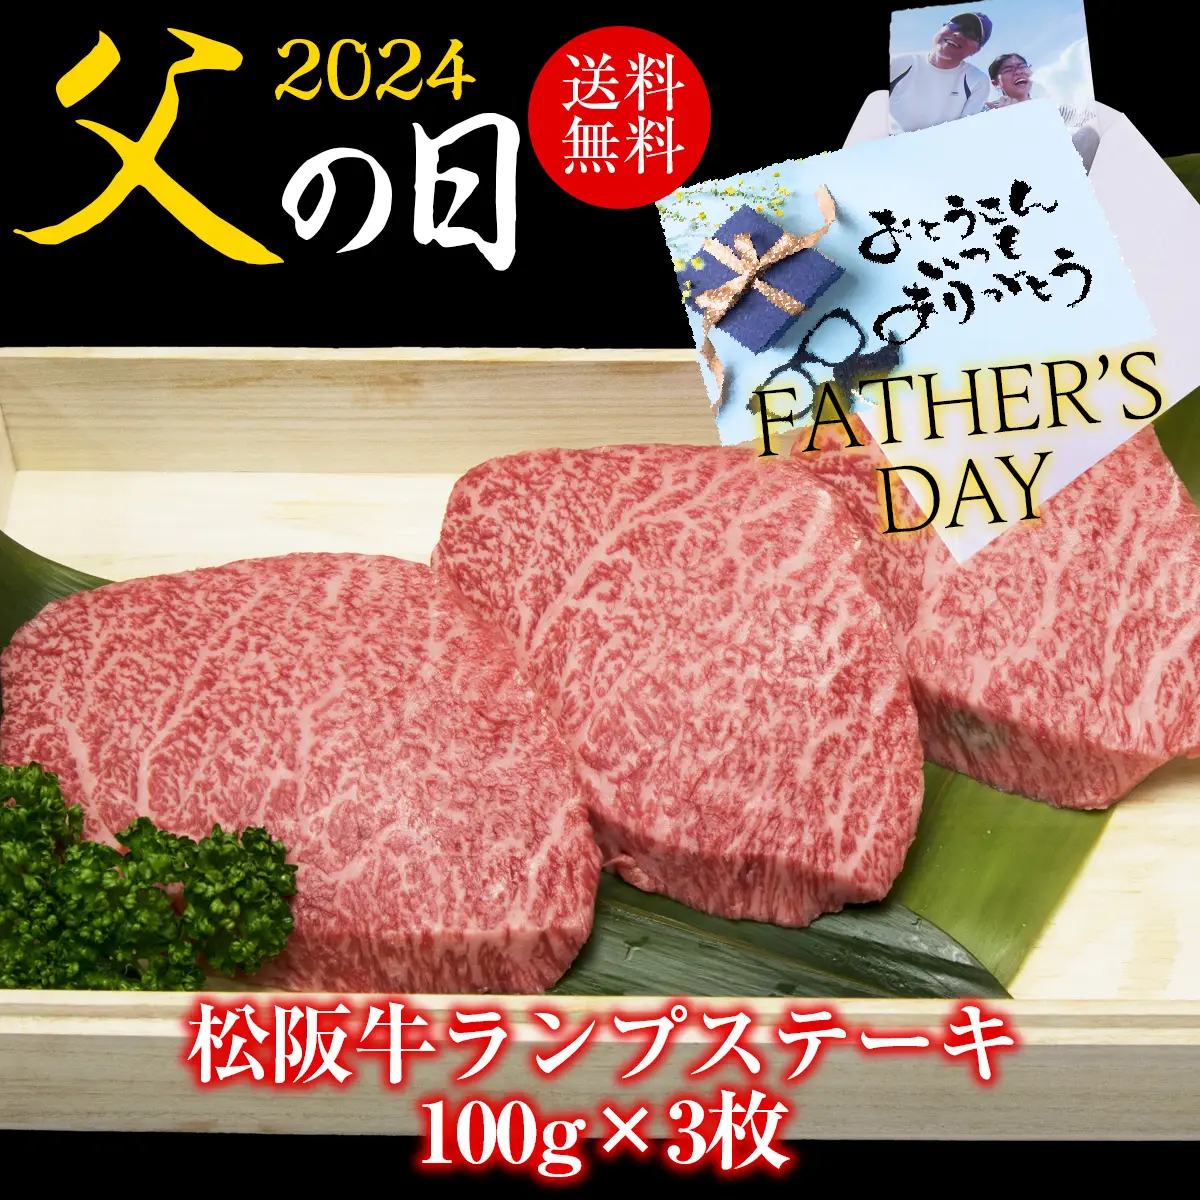 【父の日】松阪牛ランプステーキ 100g×3枚セット